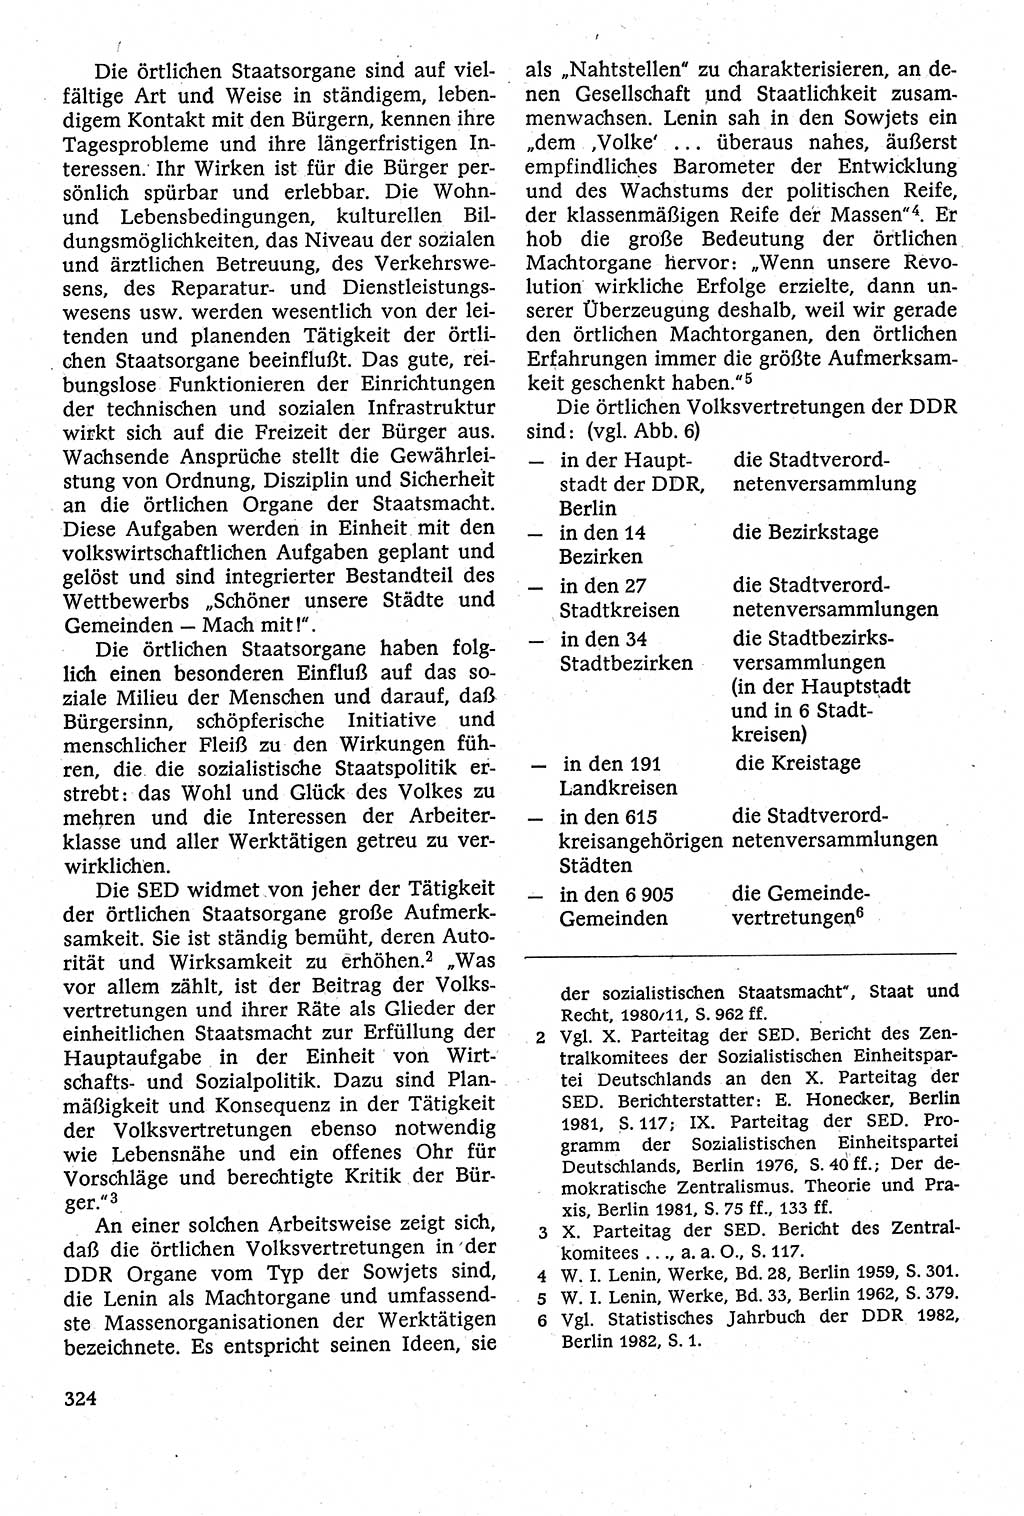 Staatsrecht der DDR [Deutsche Demokratische Republik (DDR)], Lehrbuch 1984, Seite 324 (St.-R. DDR Lb. 1984, S. 324)